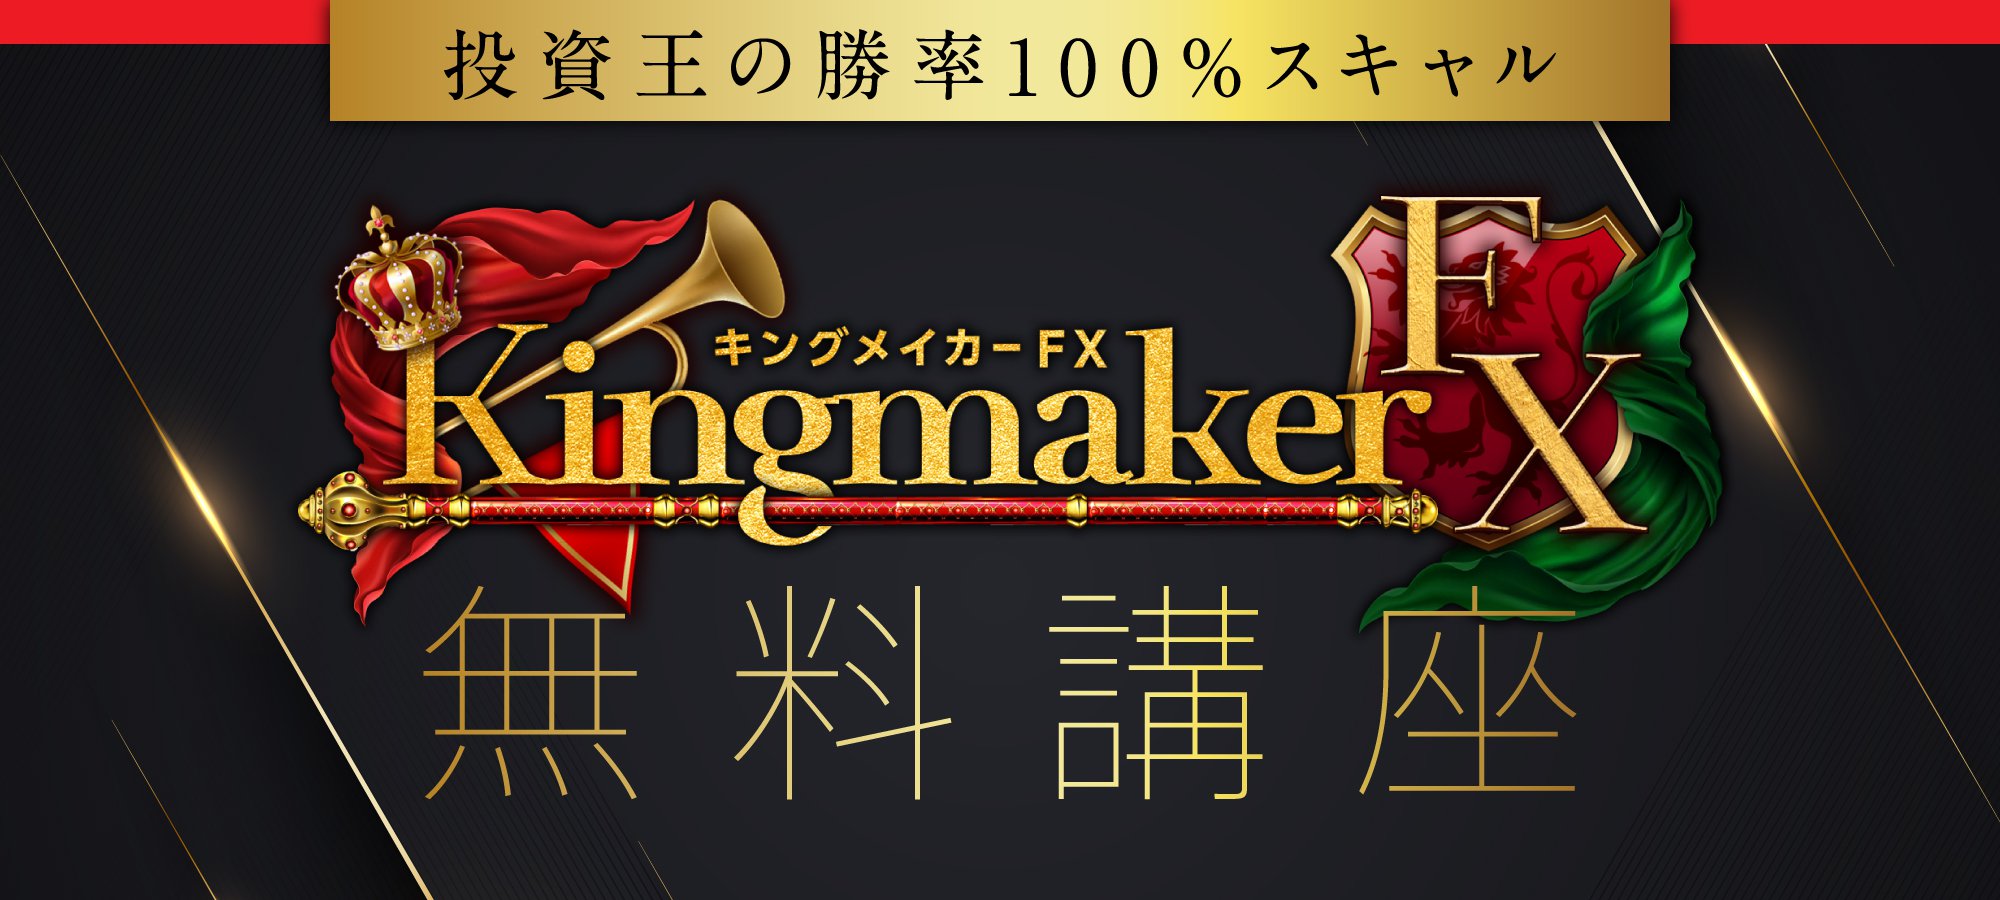 kingmaker_w 03